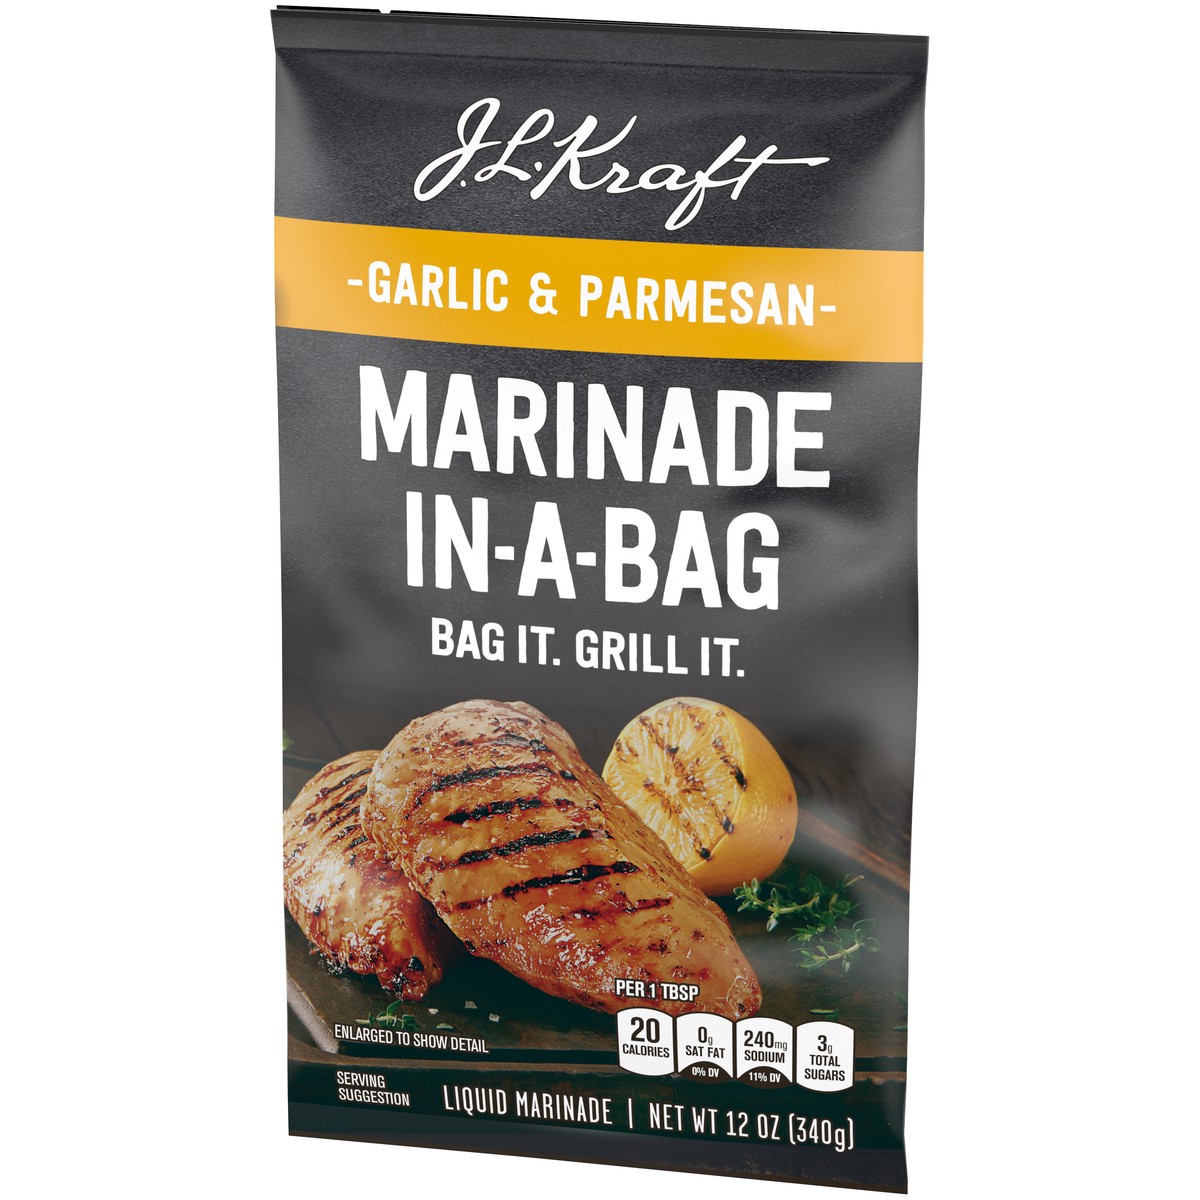 slide 5 of 9, Kraft J.L. Kraft Marinade In-A-Bag Garlic & Parmesan Liquid Marinade, 12 oz Bag, 12 oz